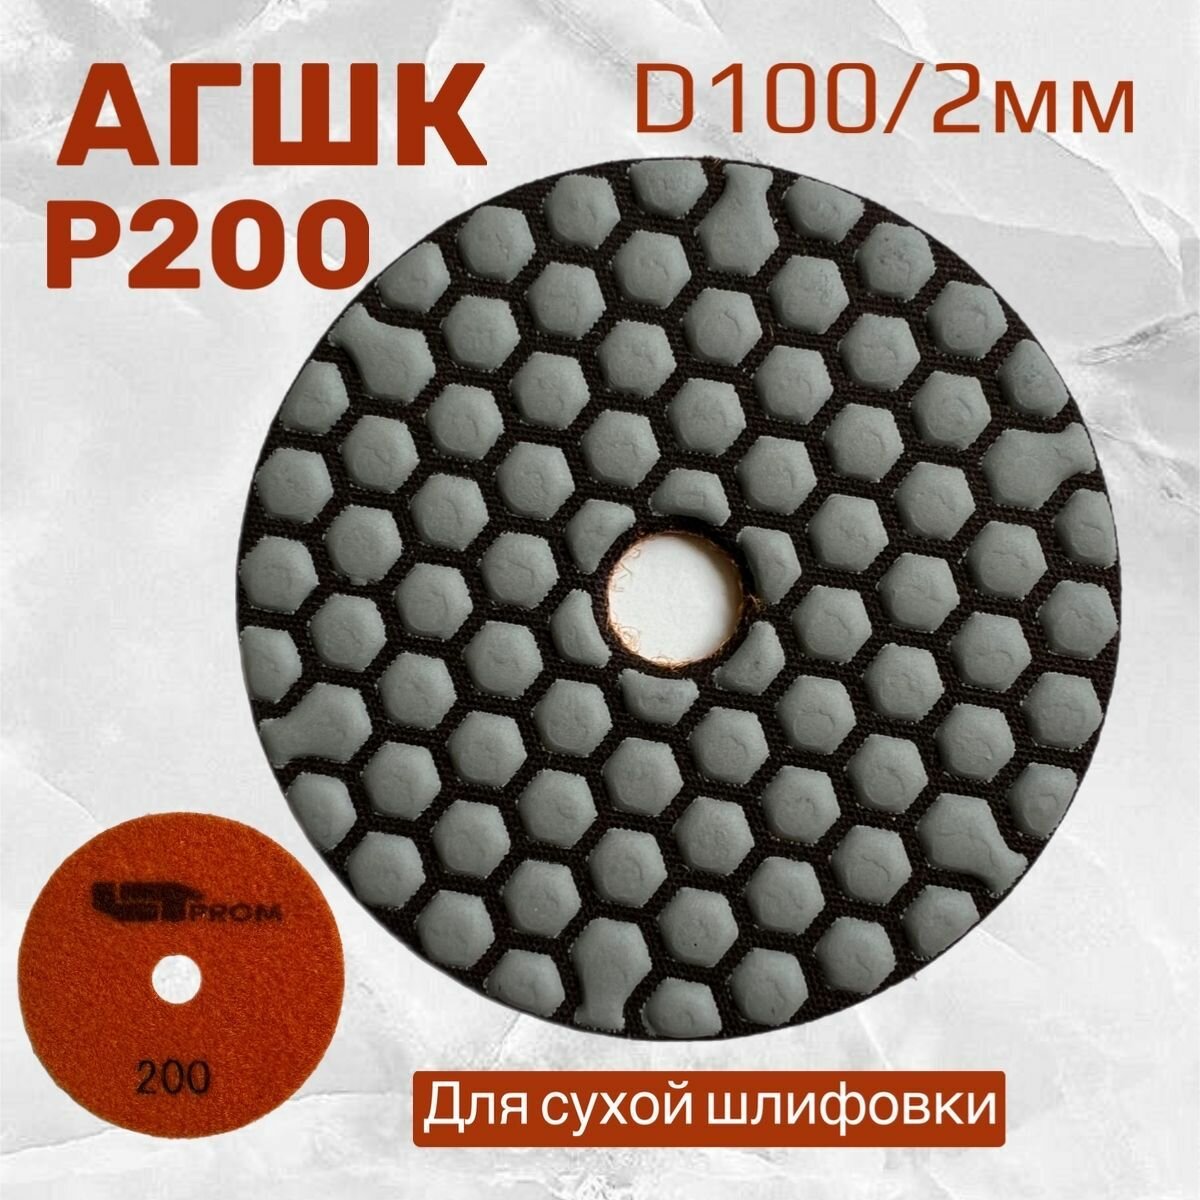 Шлифовальный круг на липучке черепашка для керамогранита АГШК P 200 D 100